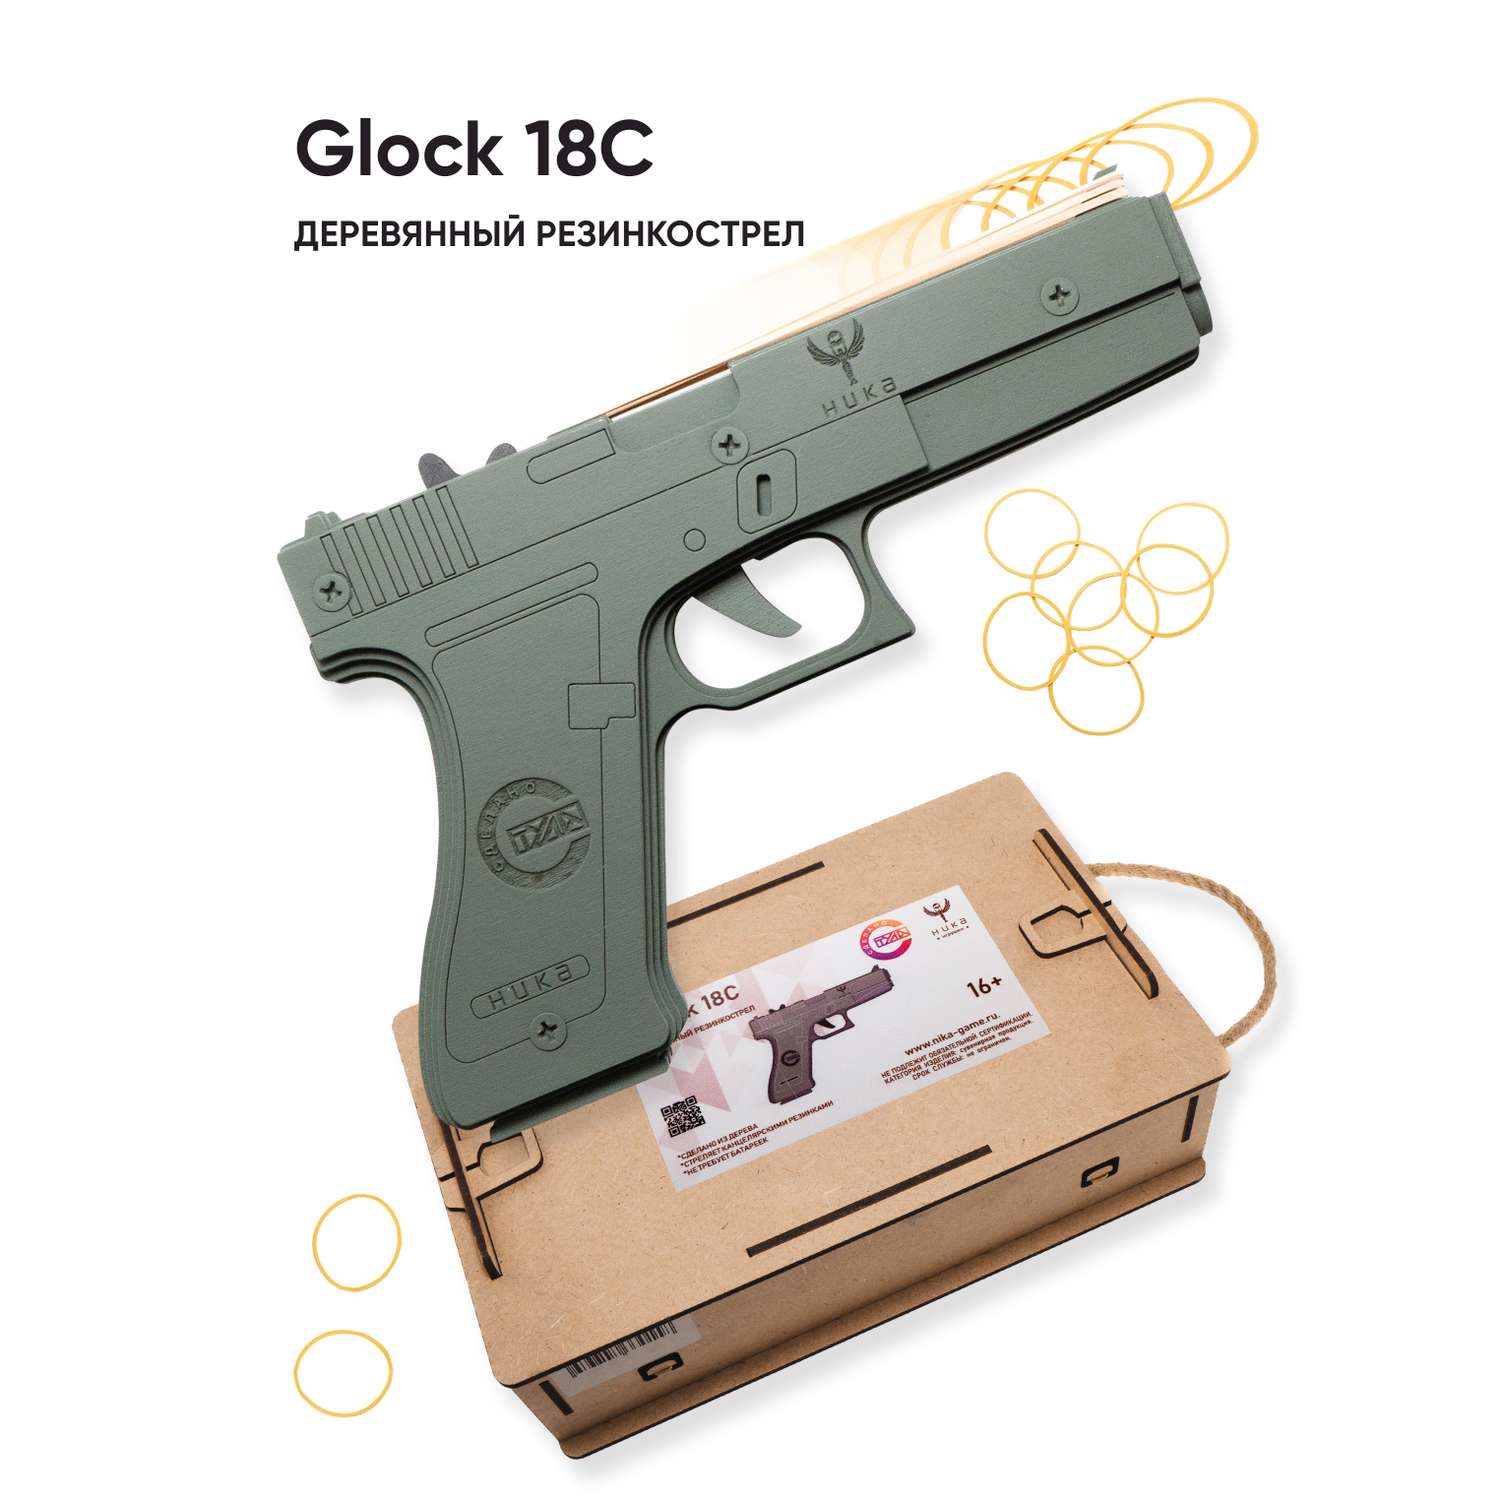 Резинкострел НИКА игрушки Пистолет Glock 18C (G) в подарочной упаковке - фото 1